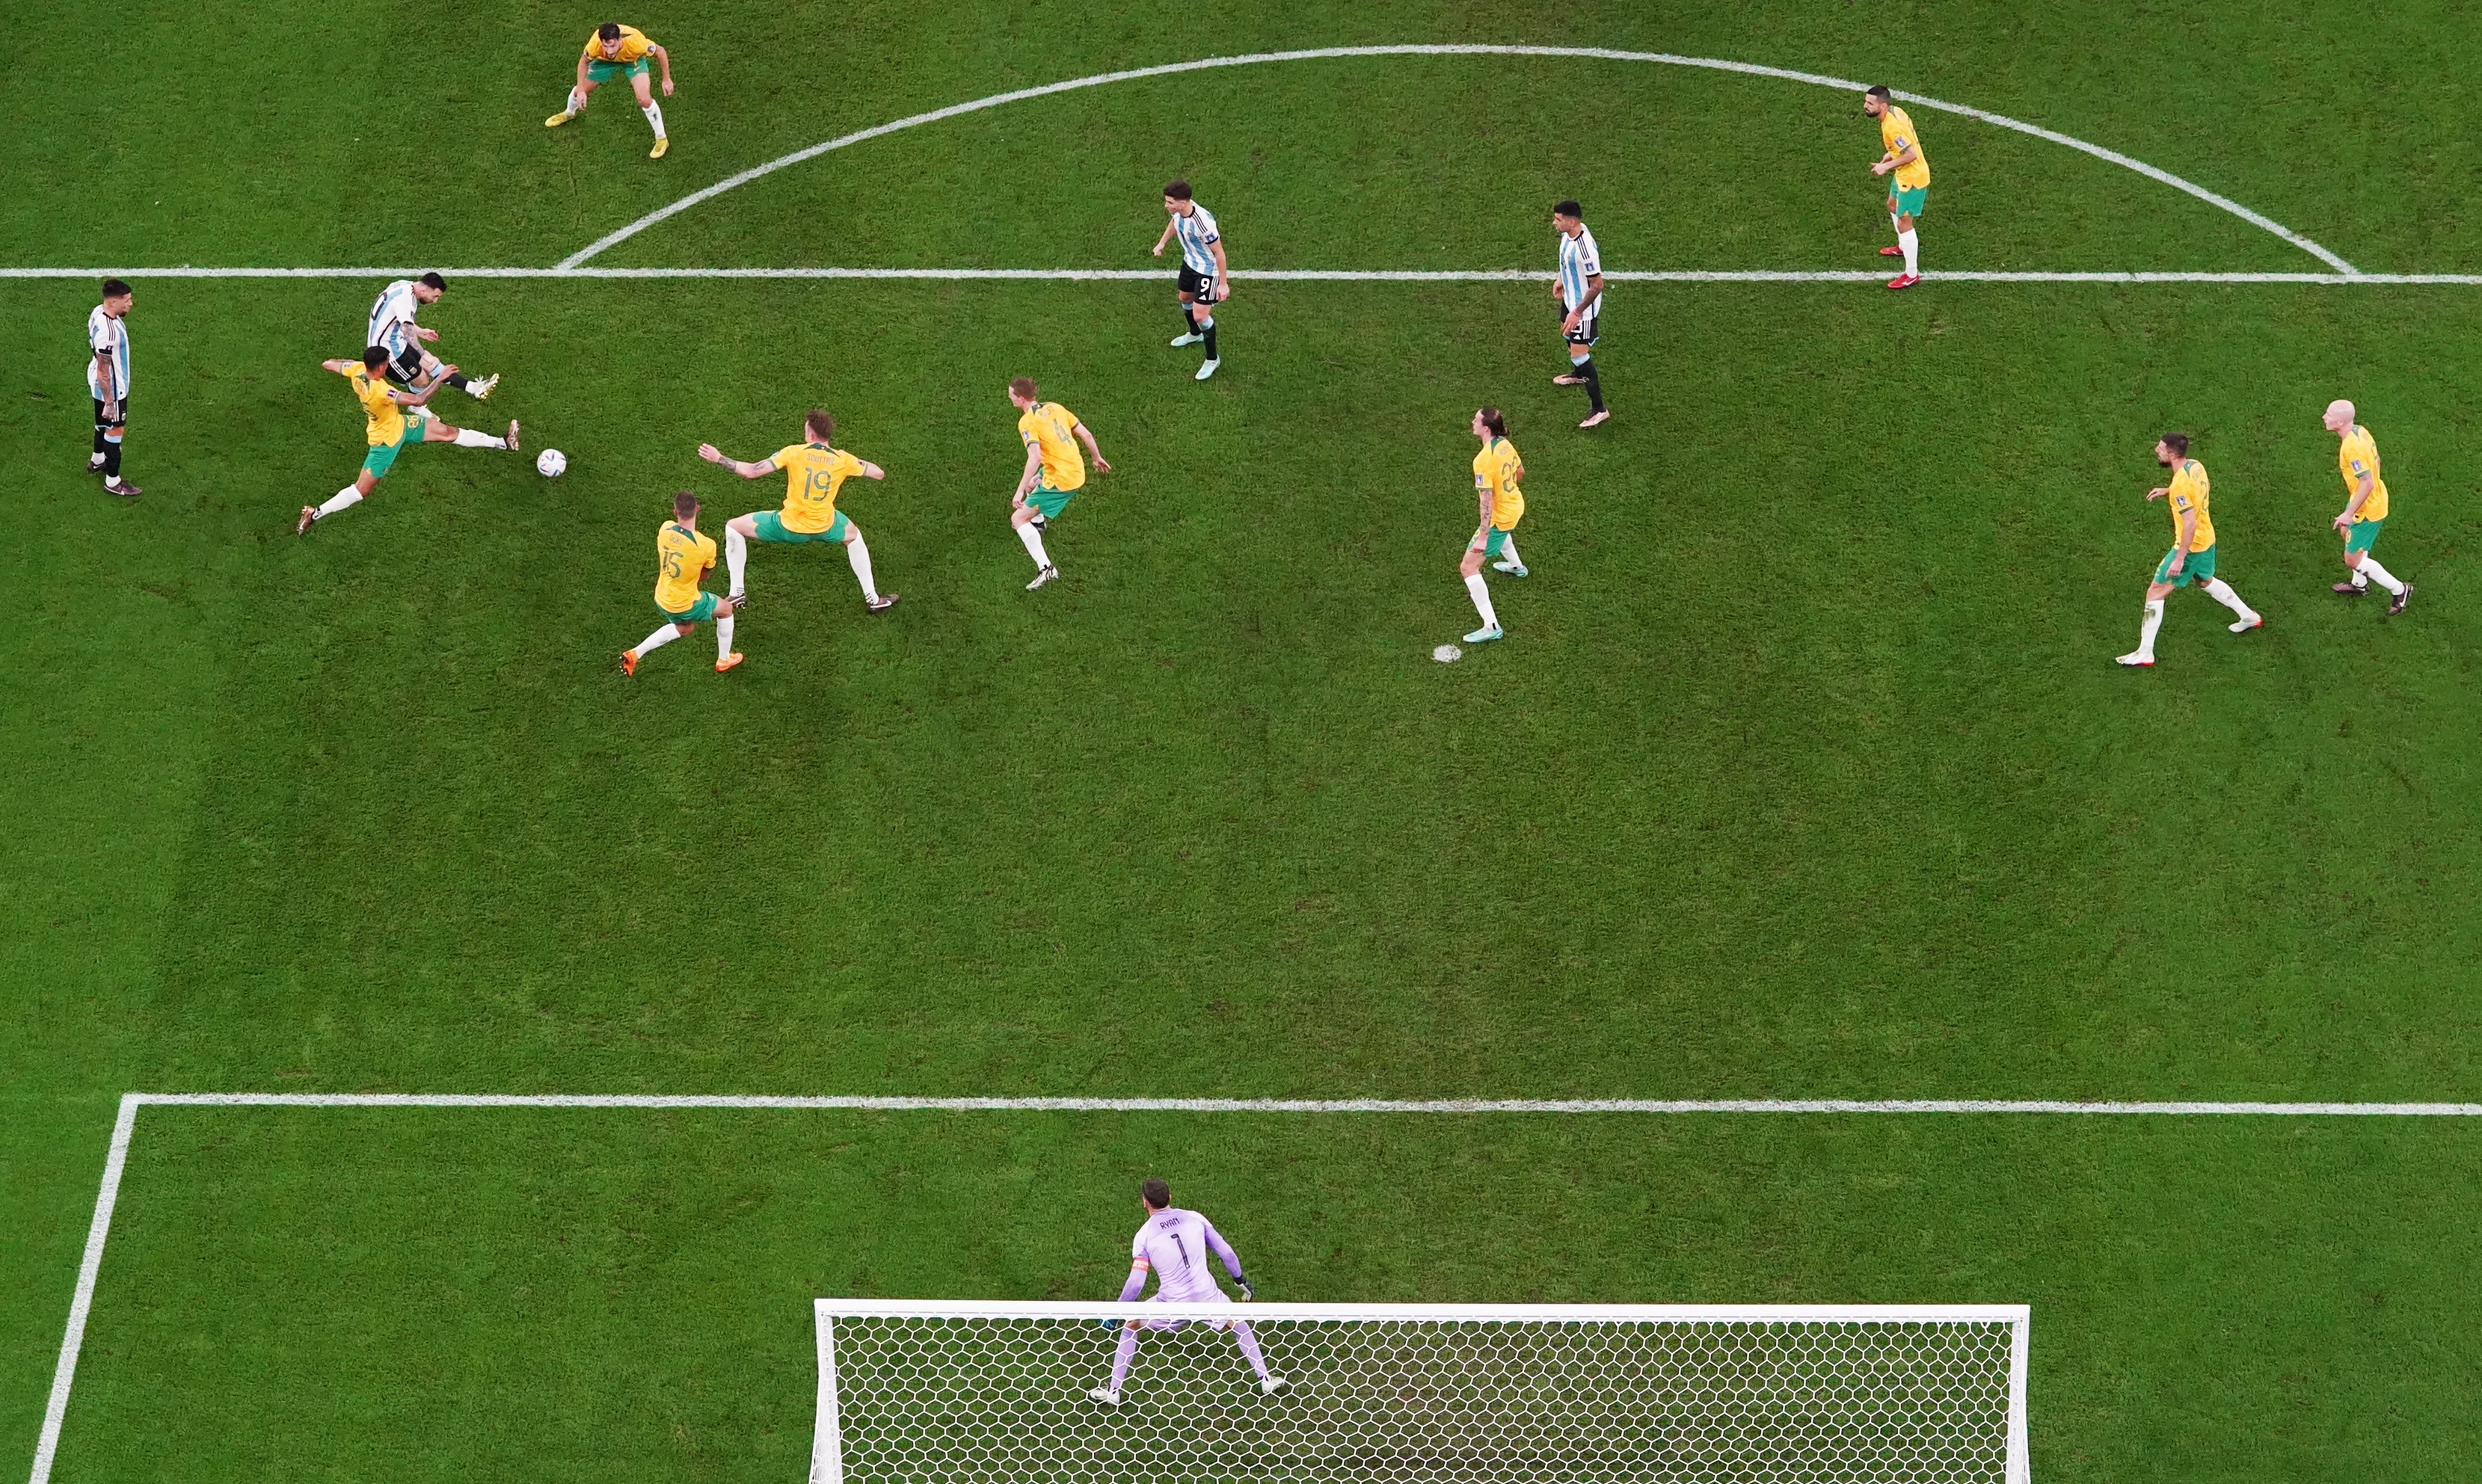 Así fue el gol de Messi que destrabó el duelo ante Australia y le dio la ventaja a Argentina en el Mundial Qatar 2022: superó una “barrera” de siete hombres